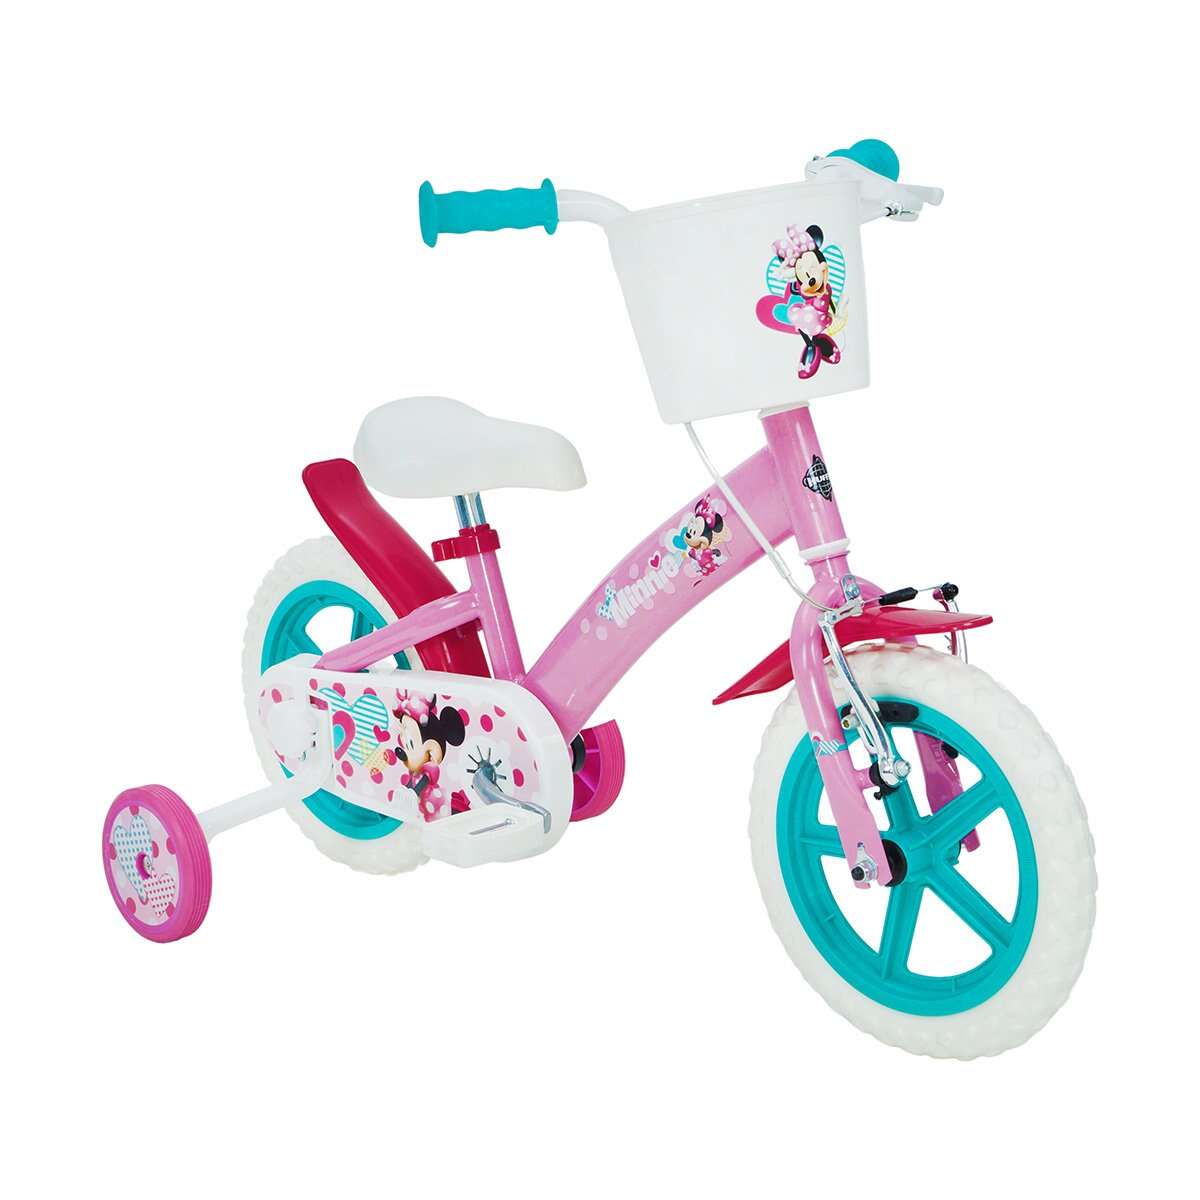 Bicicleta copii, Huffy, Disney Minnie, 12 inch